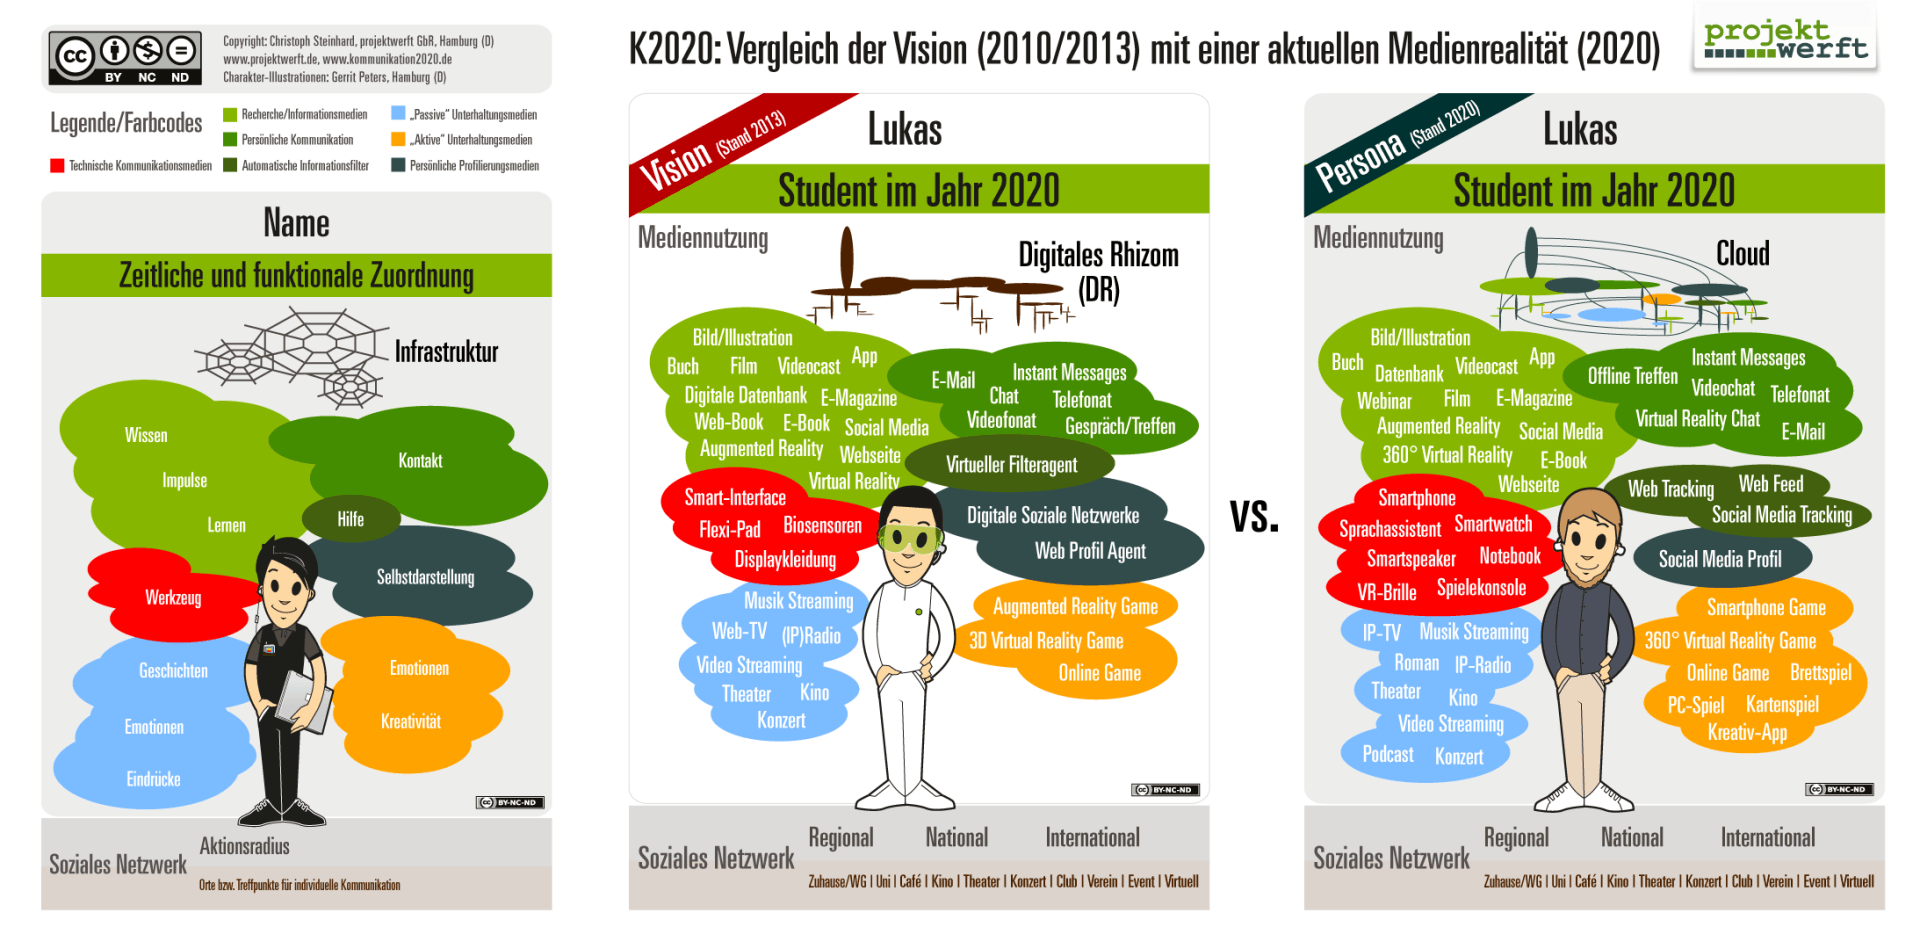 Kommunikation 2020 Illustration: Vergleich der Vision 2010/2013 mit einer aktuellen Medienrealität 2020